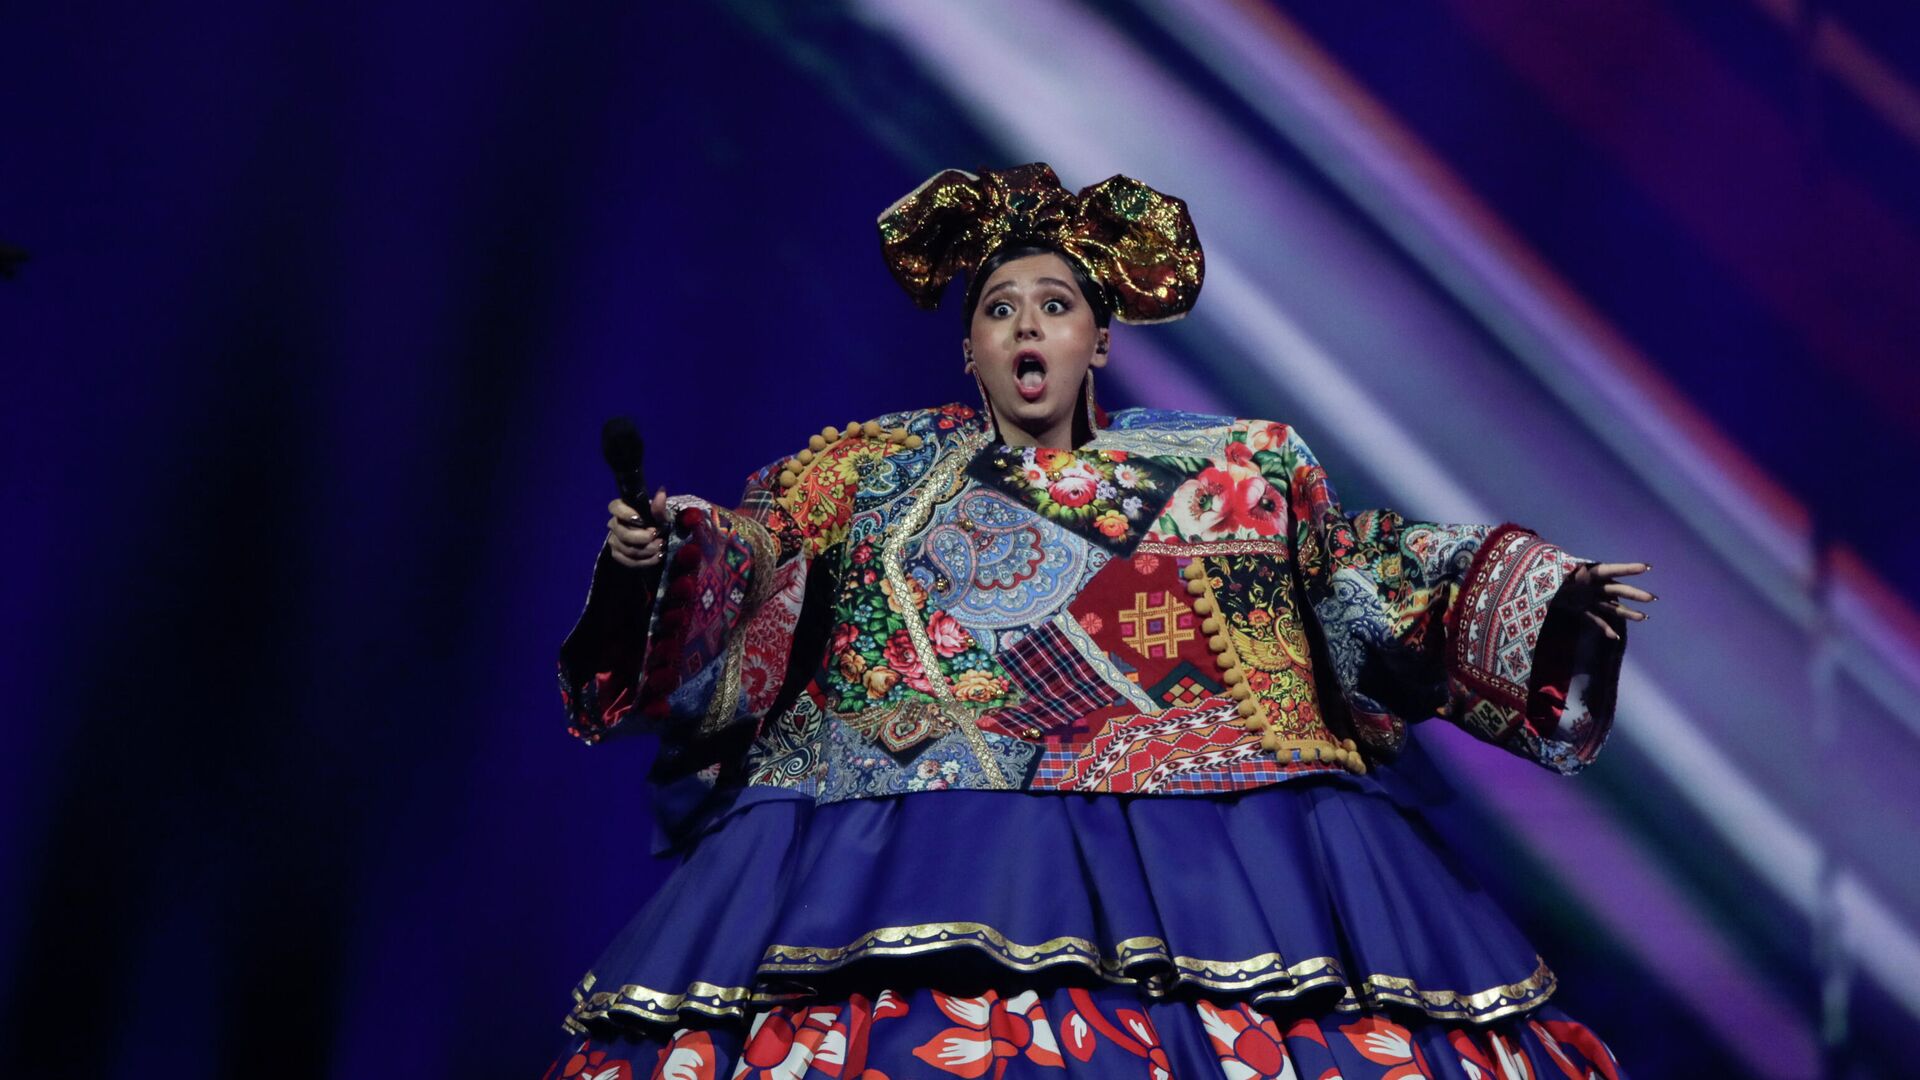 Россиянка Манижа выступает во время первого полуфинала 65-го конкурса Евровидение-2021 - Sputnik Таджикистан, 1920, 08.07.2021